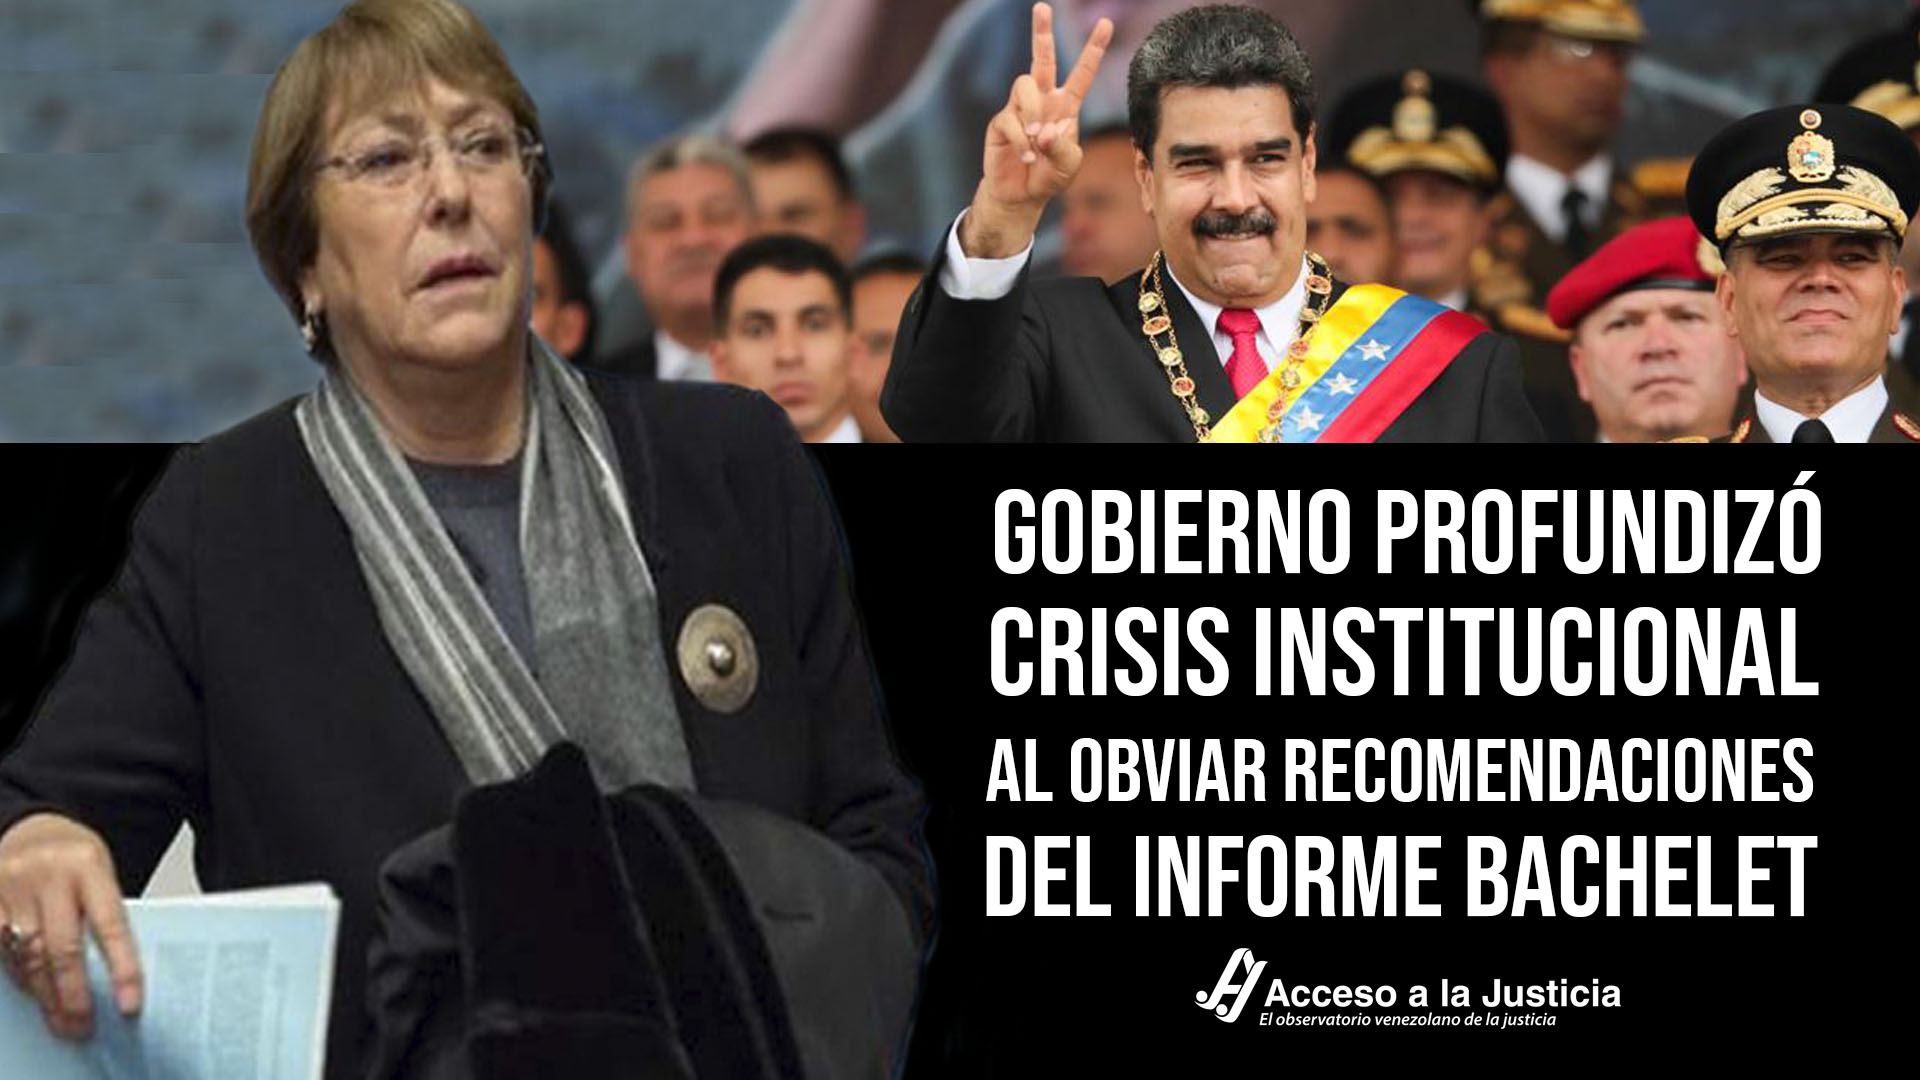 Acceso a la Justicia: Régimen profundizó crisis institucional al obviar recomendaciones del informe Bachelet